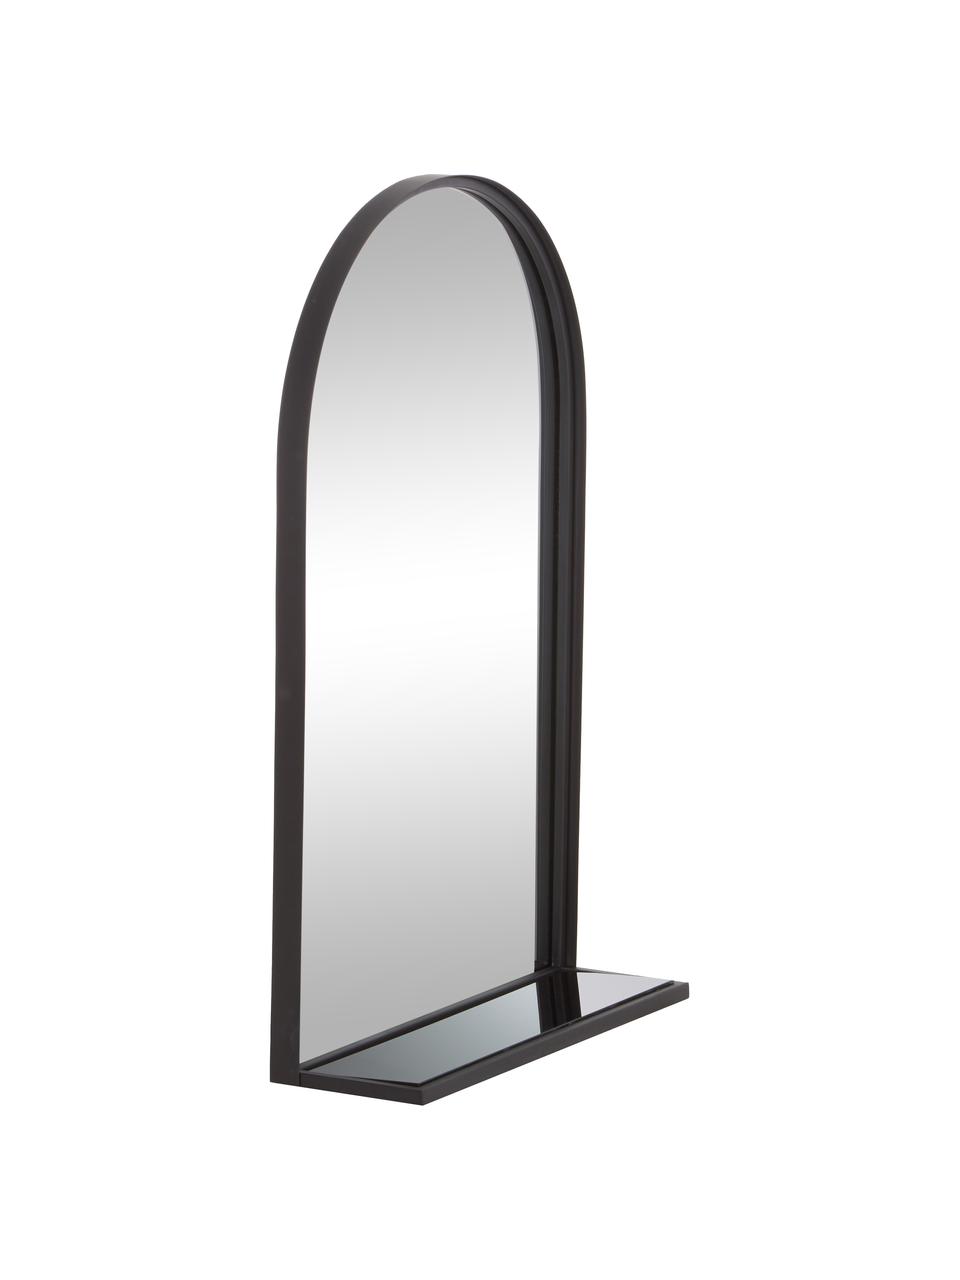 Nástenné zrkadlo s policou v čiernom kovovm ráme Grisell, Čierna, Š 46 x V 77 cm